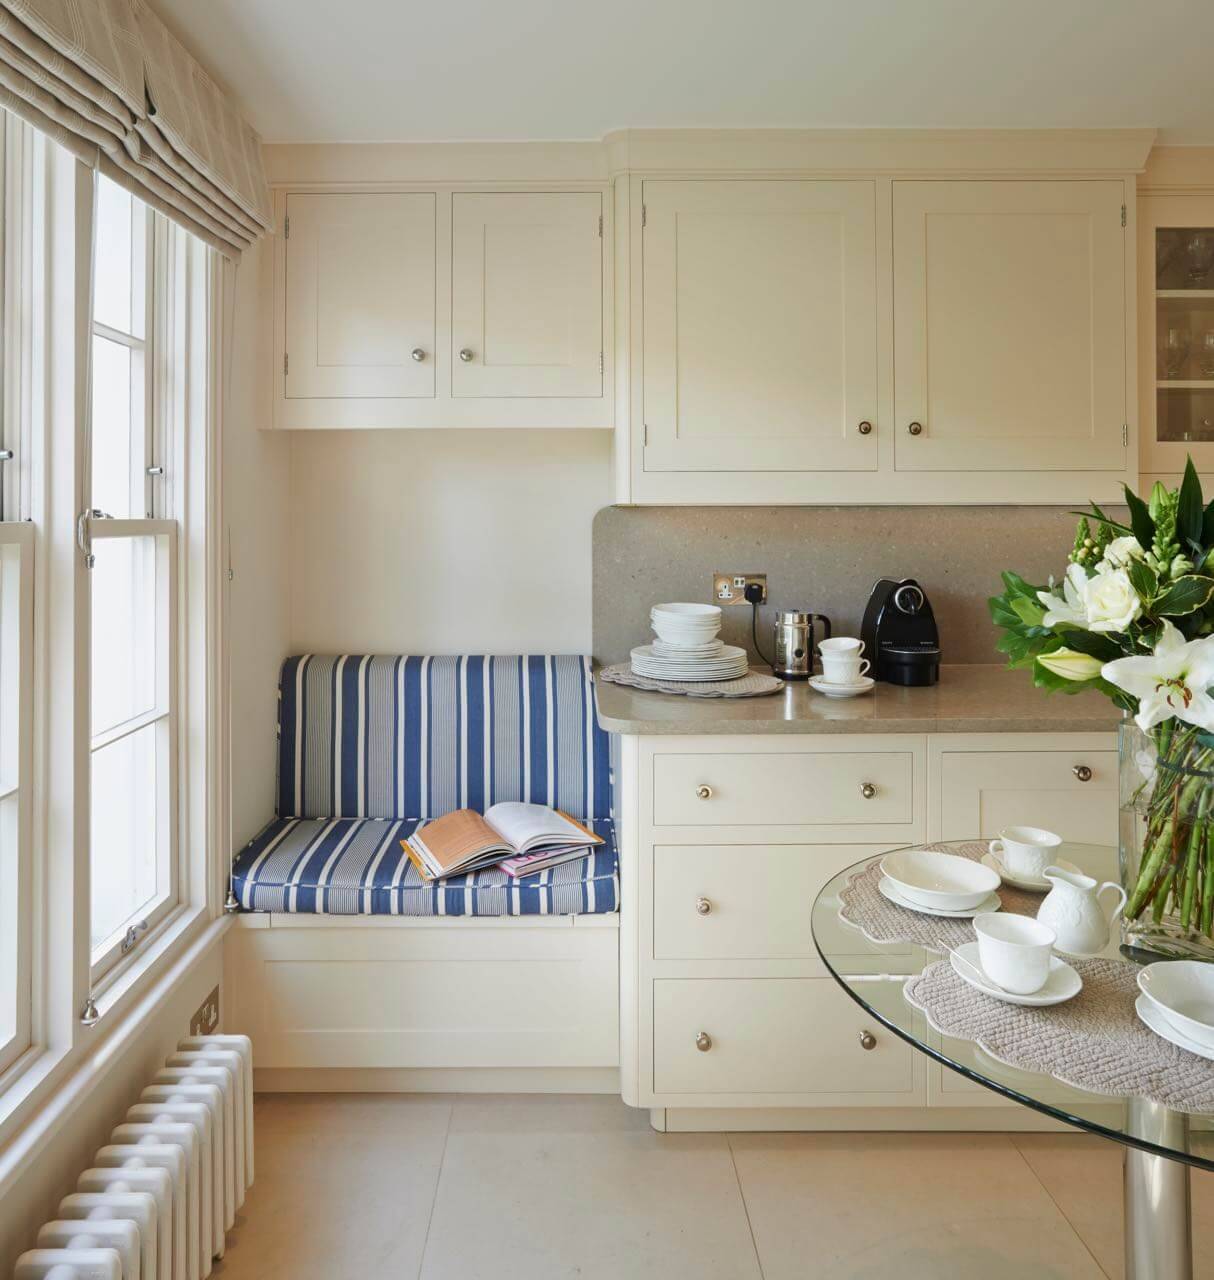 Кухонный уголок со спальным местом - 30 красивых фото в интерьере